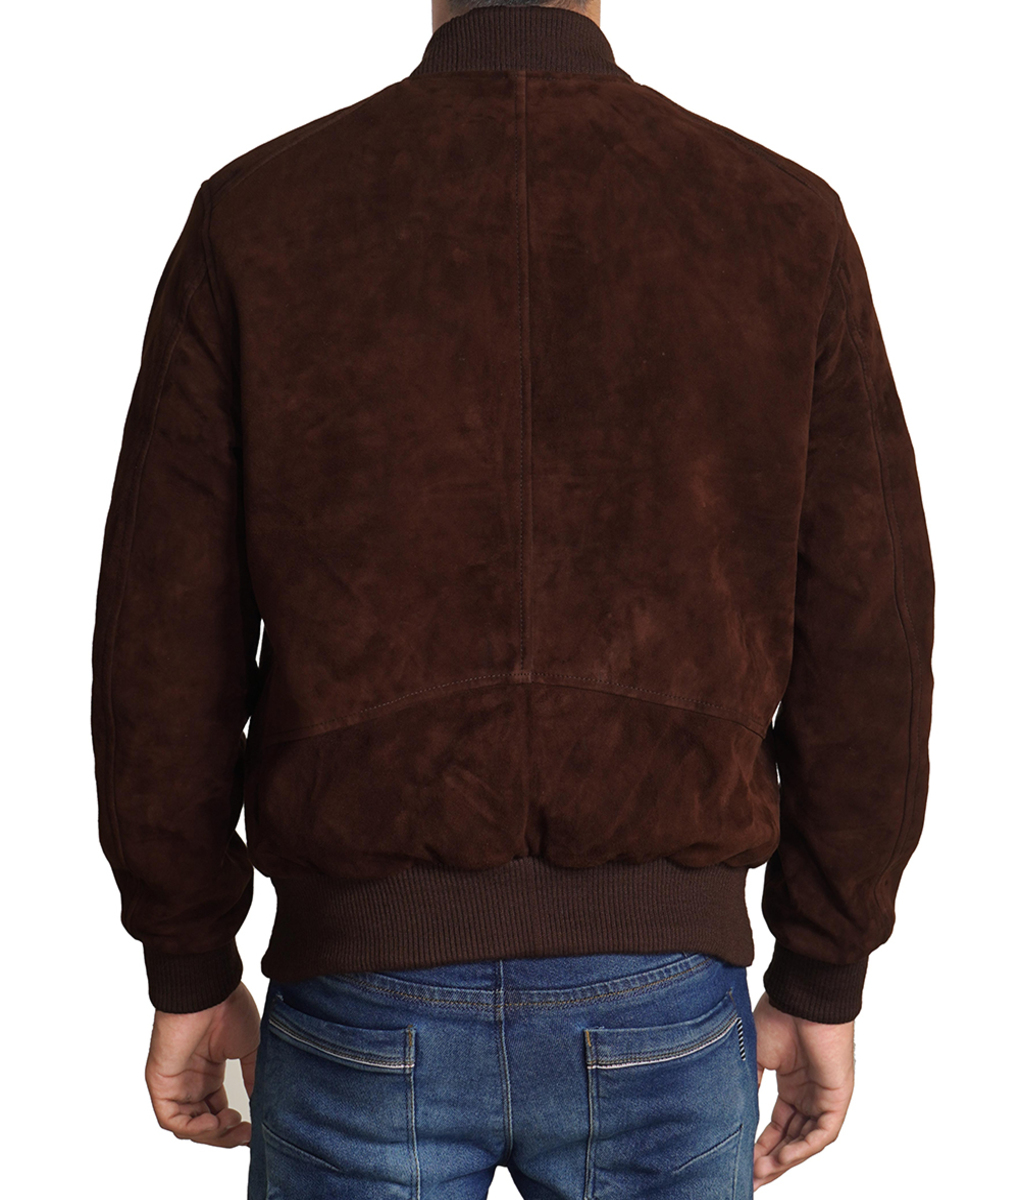 Mens_Suede_Dark_Brown_Leather_Jacket